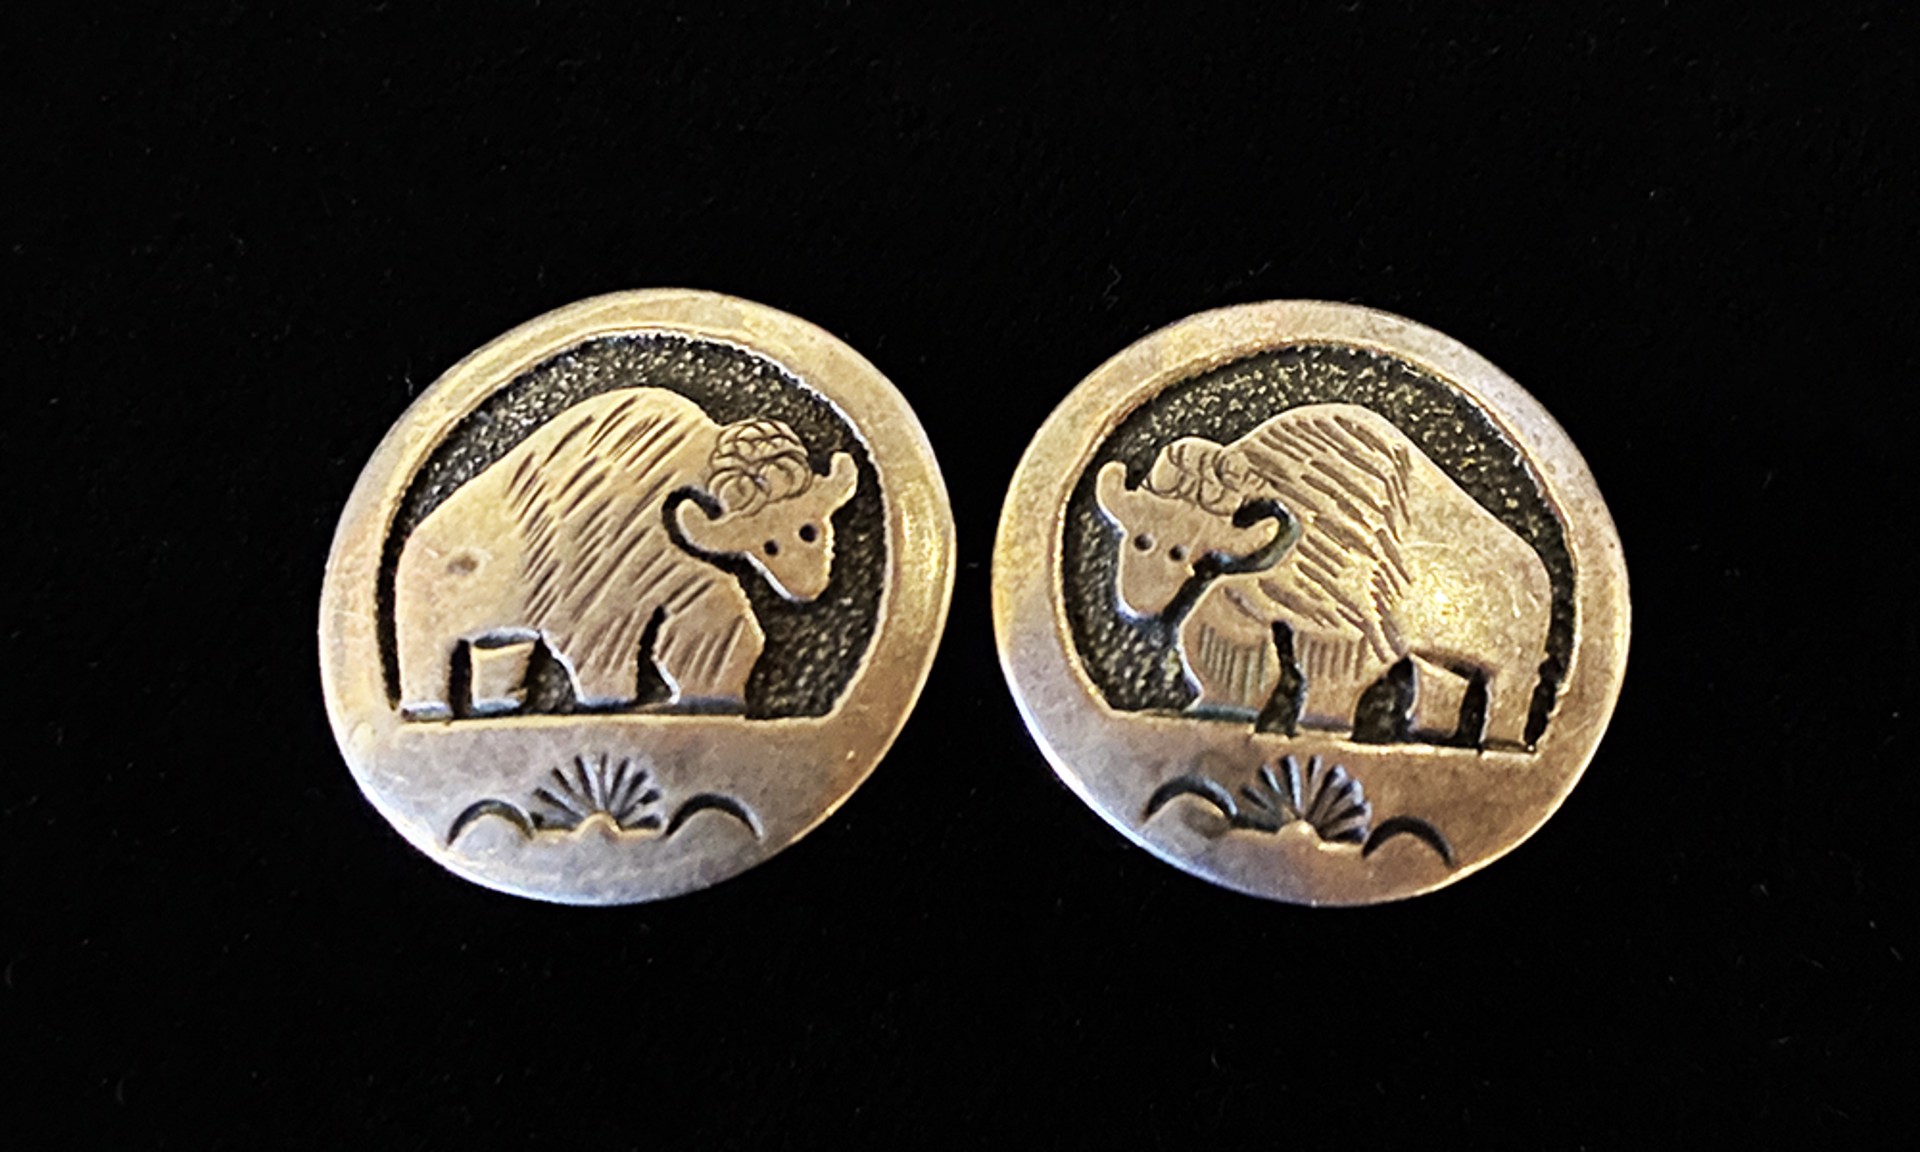 Buffalo clip on silver Earrings by Artist Unknown